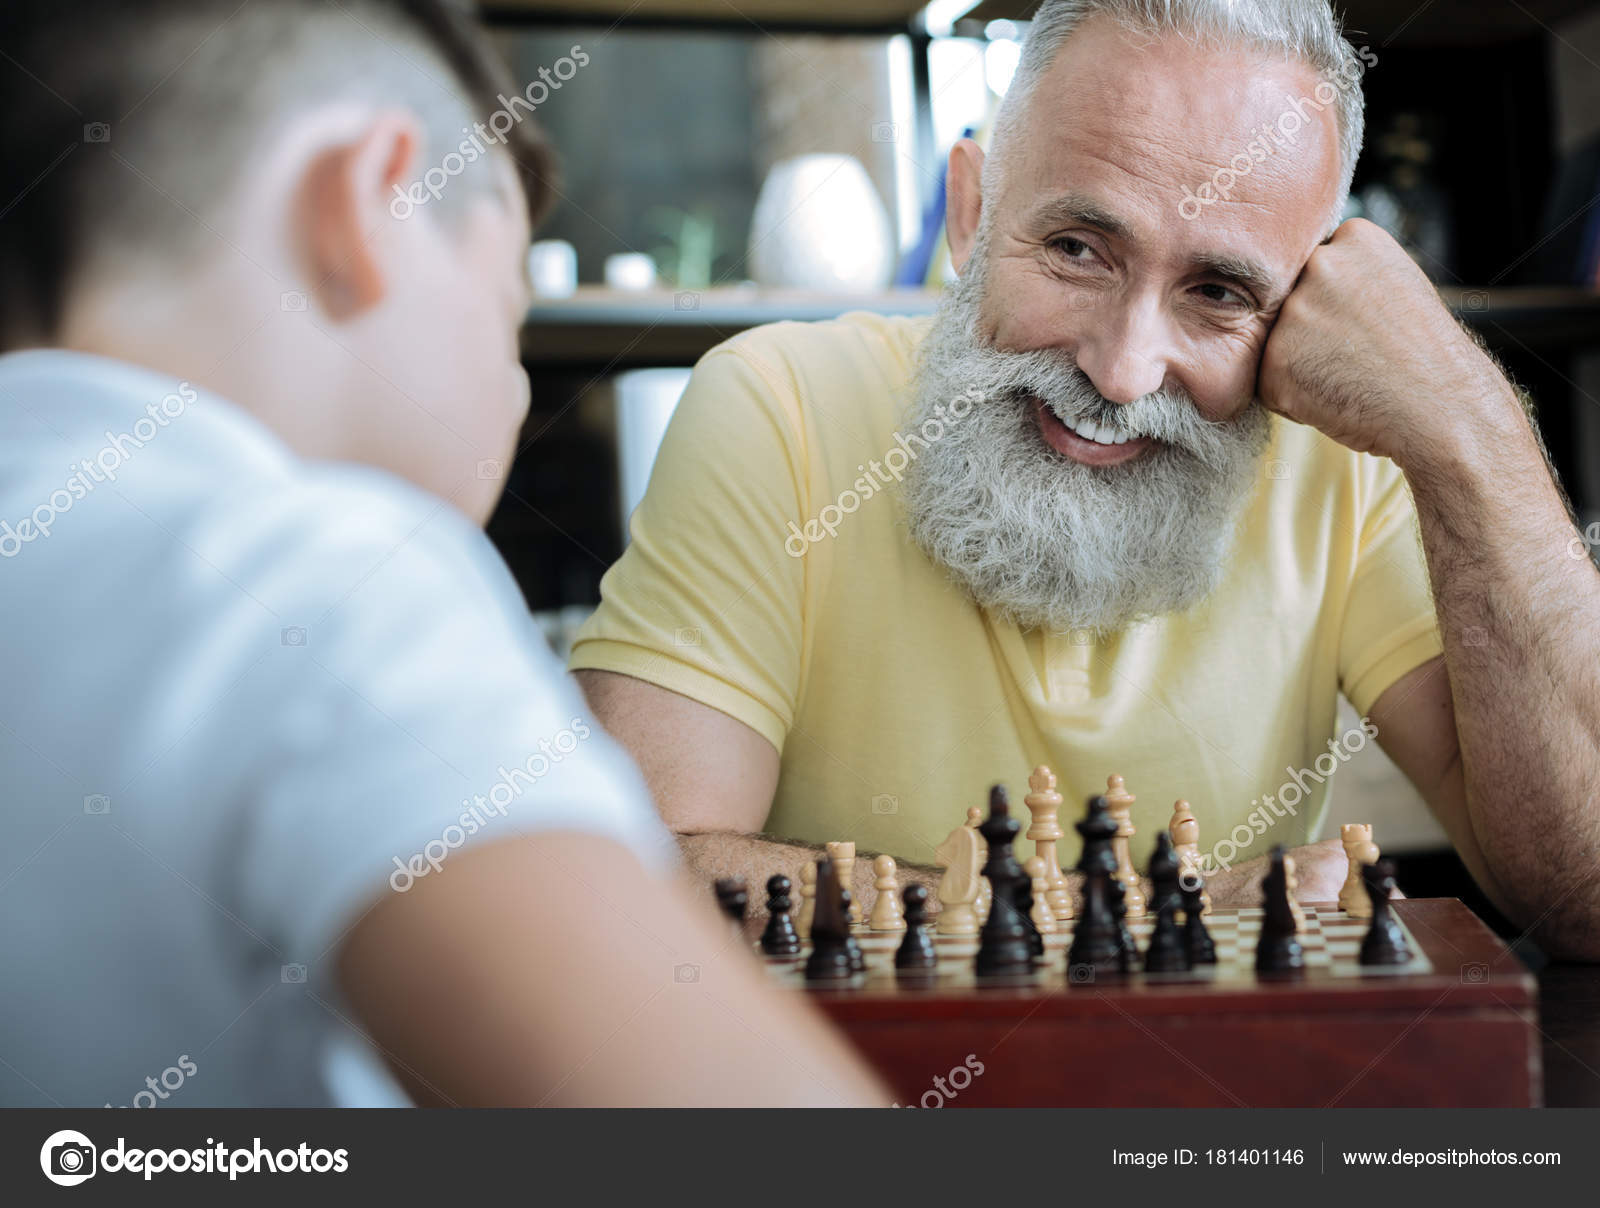 Дед с внуком играют в шашки. Дед играет в шахматы. Дедушки играют в шахматы. Дед и внук играют в шахматы. Игра в шахматы пожилых.